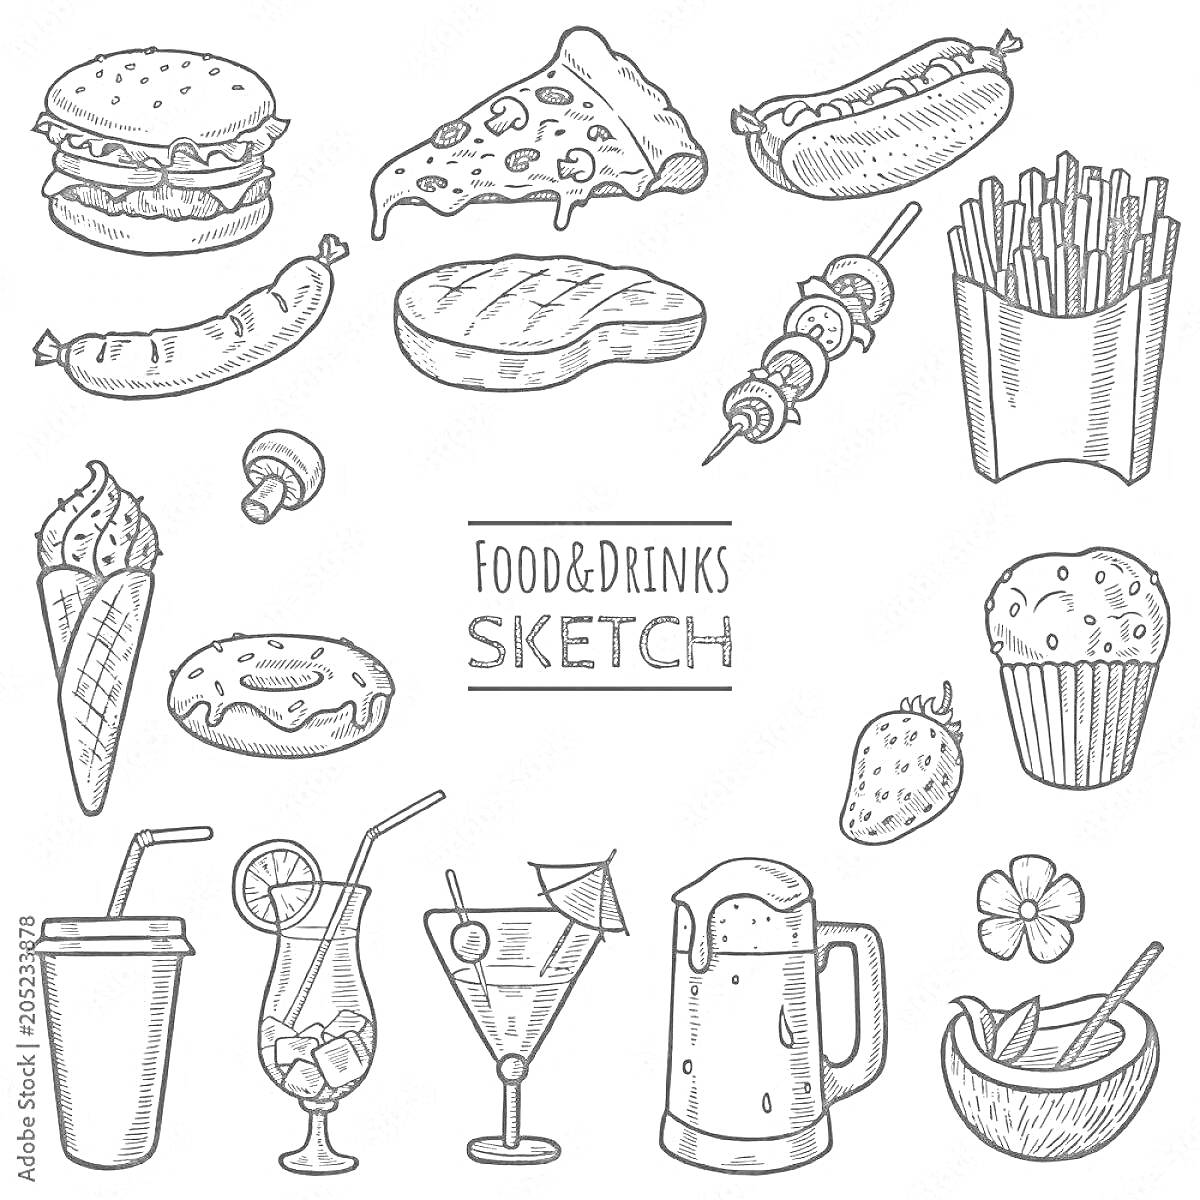 гамбургер, пицца, хот-дог, картофель фри, колбаса, стейк, шашлык, мороженое, пончик, клубника, кекс, молочный коктейль, коктейль, коктейль в бокале, пивная кружка, стакан, цветок, миска с ложкой